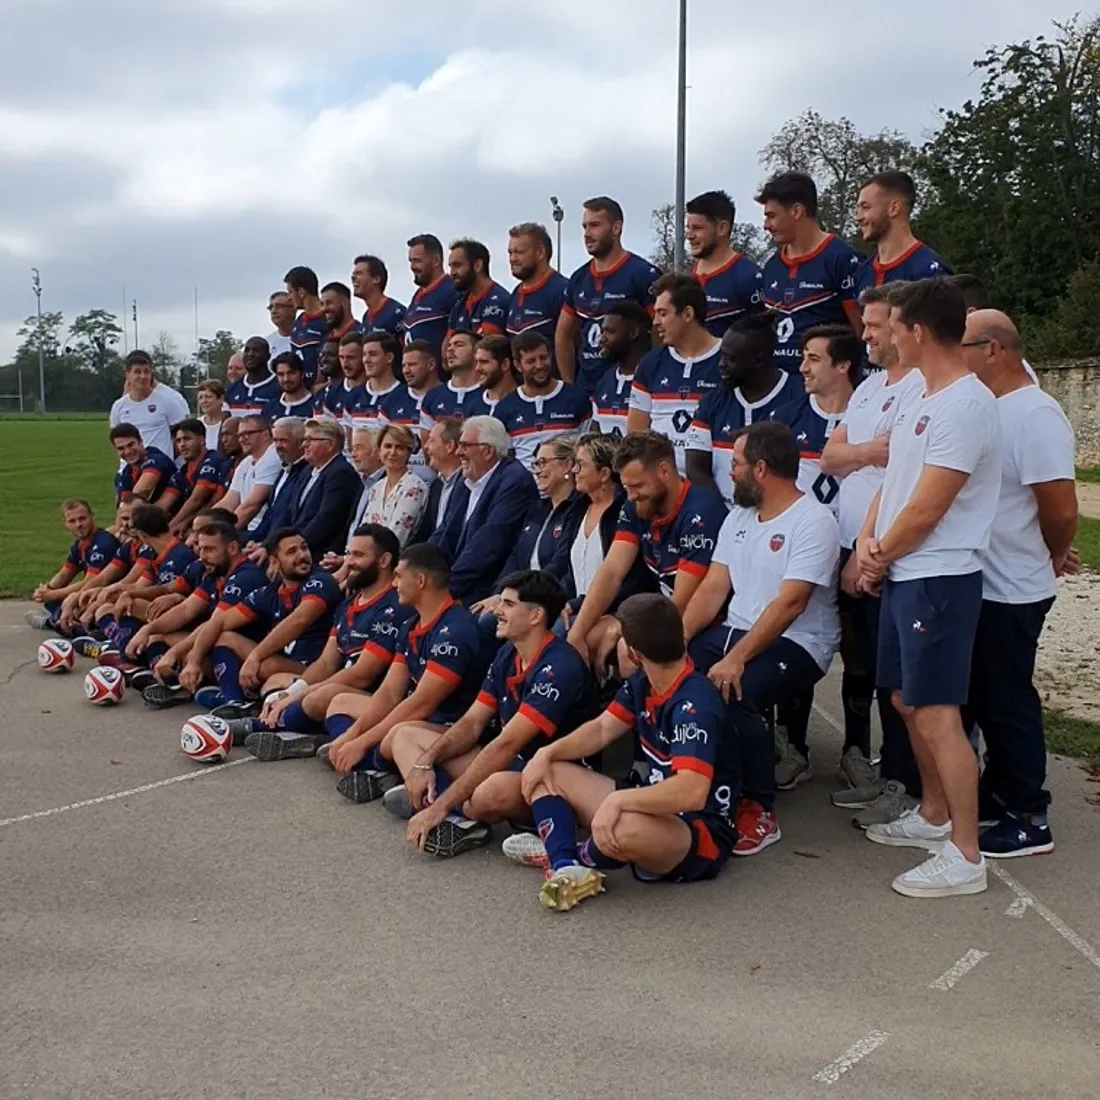 L'équipe du Stade Dijonnais au grand complet il y a deux semaines lors de la photo officielle